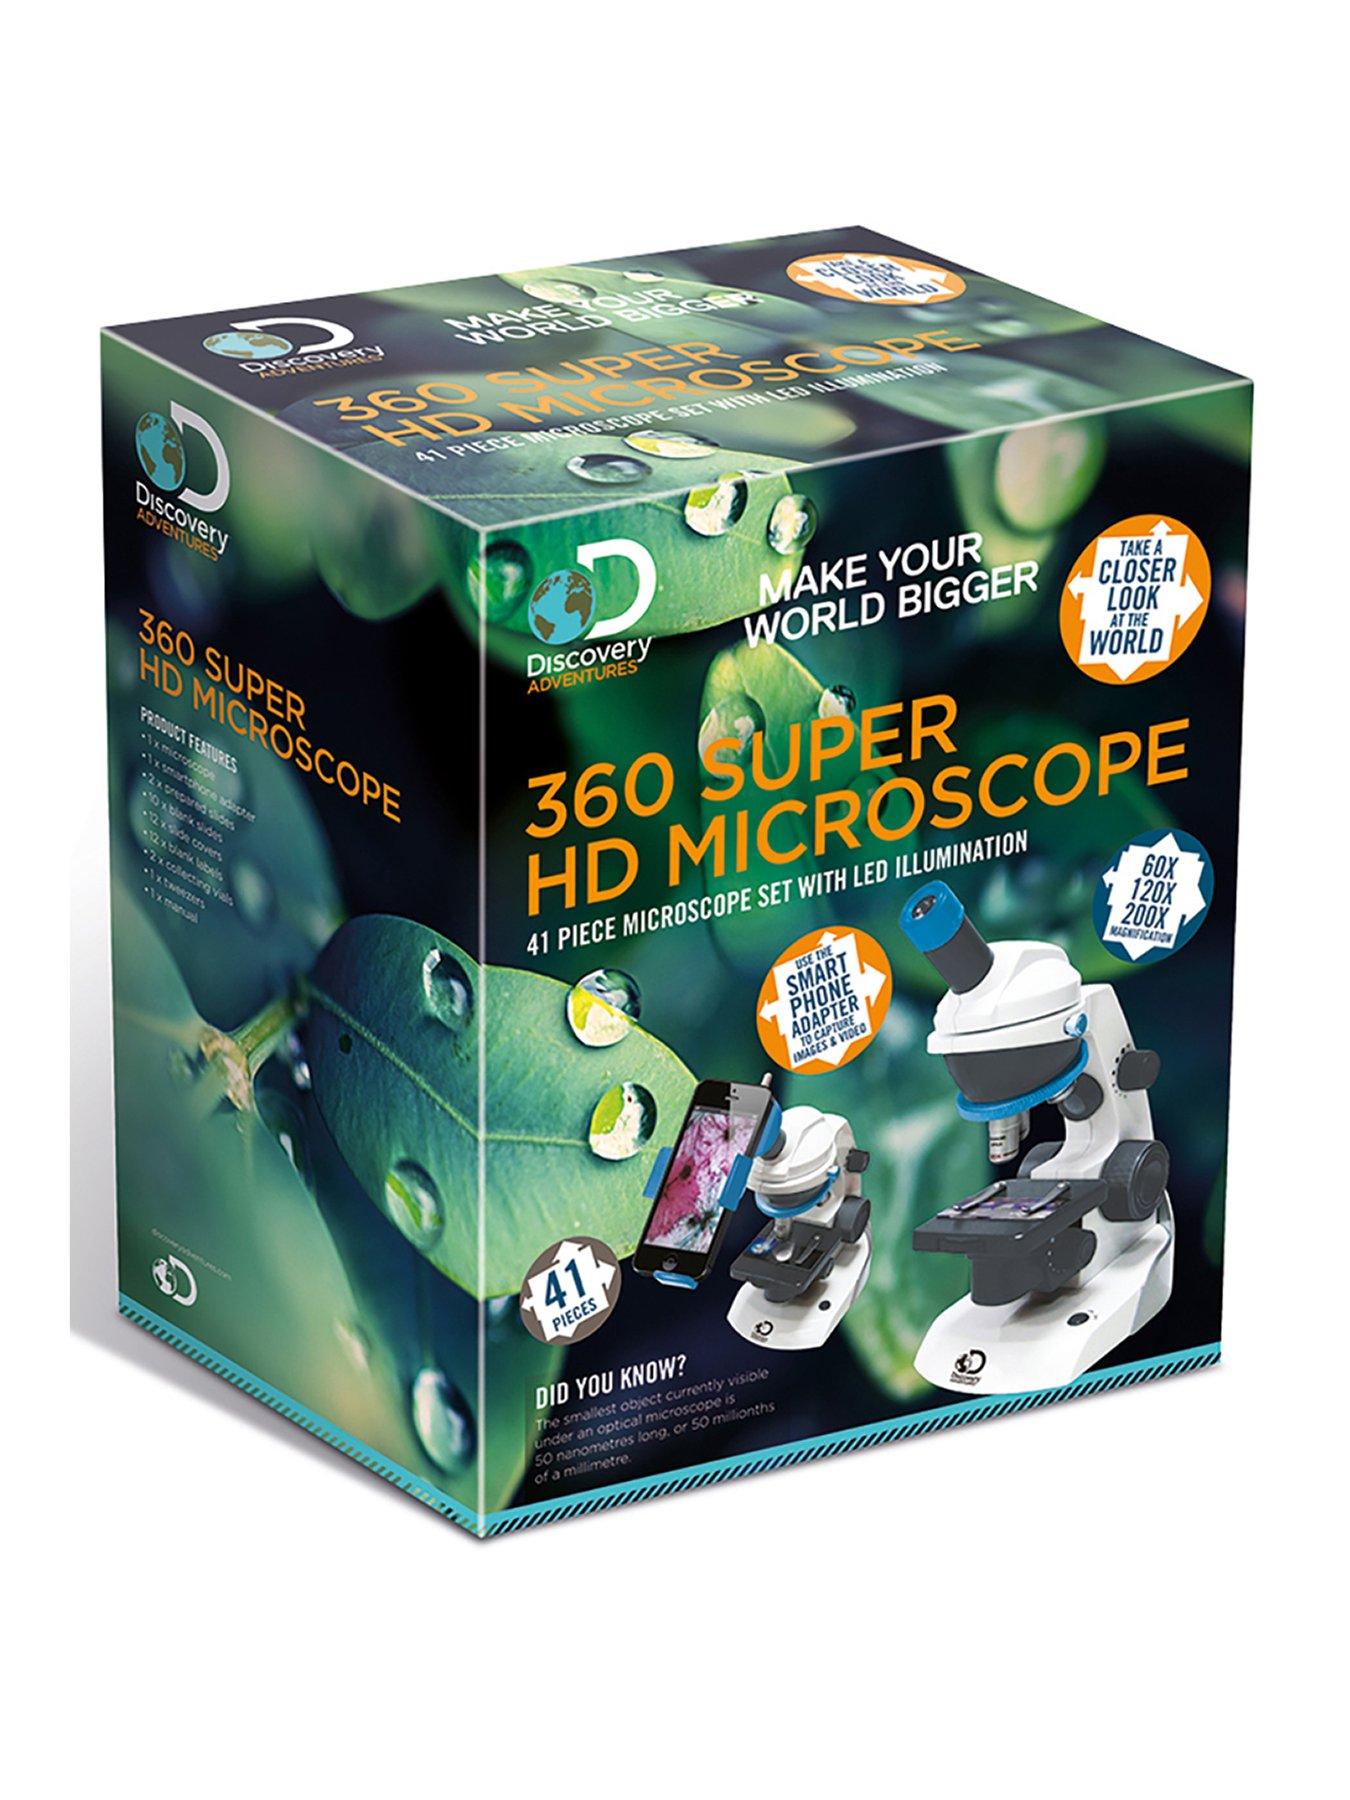 Science Mad 360 Super HD Microscope: Với kính hiển vi Super HD Microscope, bạn sẽ khám phá thế giới của khoa học với độ phóng đại 360 độ cực kỳ chi tiết. Điều này sẽ giúp bạn hiểu rõ hơn về cấu trúc và chức năng của các tế bào, giúp phát triển sự hiểu biết và sự tò mò trong khoa học.